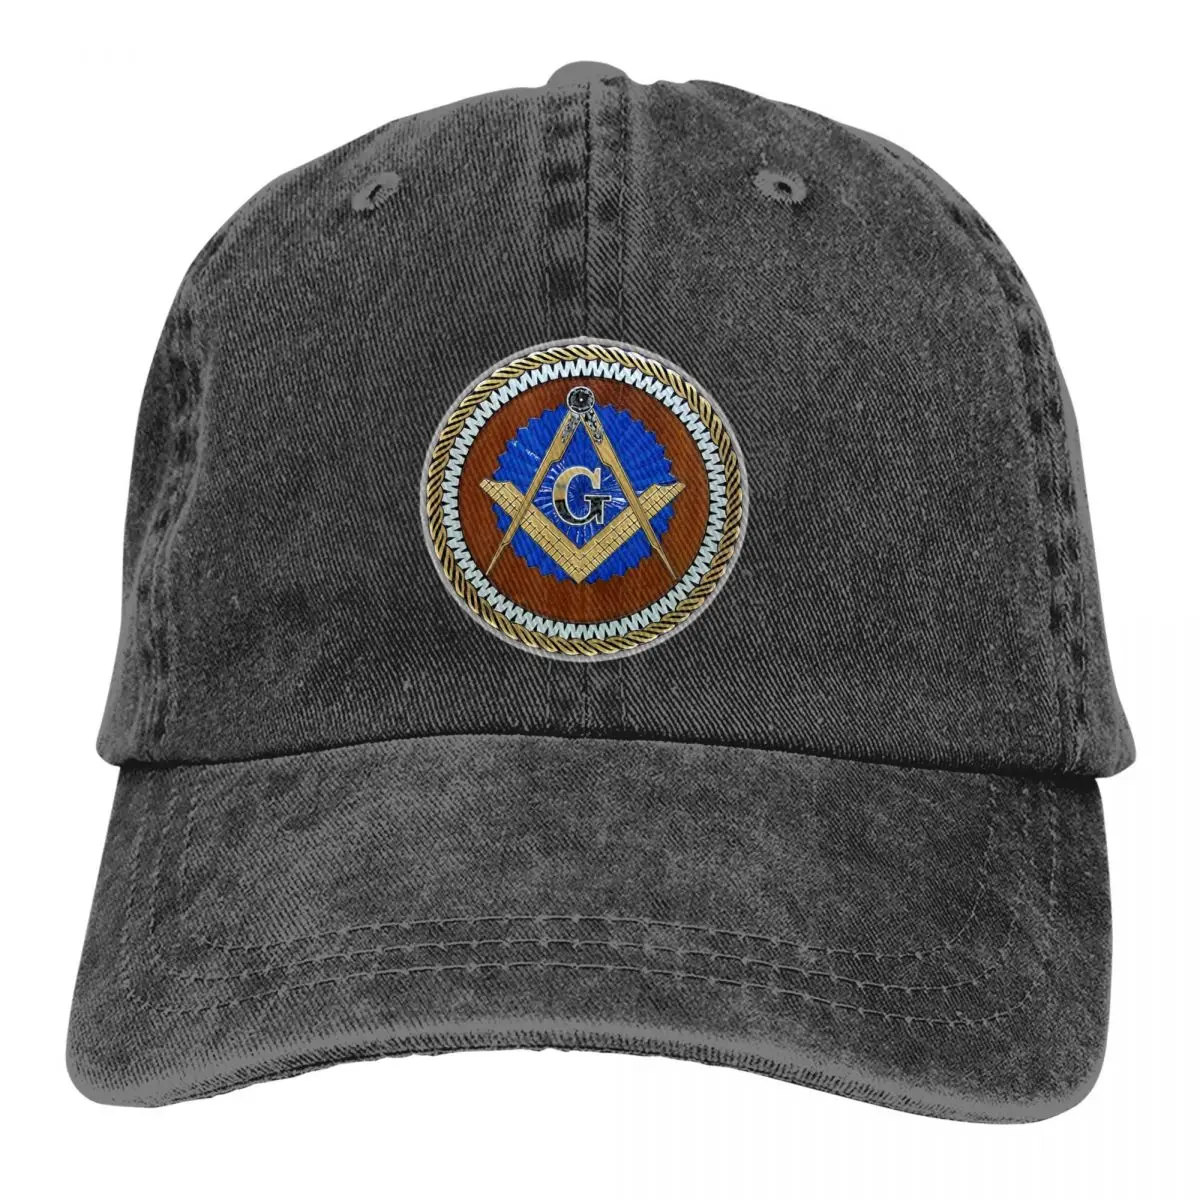 Крутая бейсболка Мужские Шляпы Женские с защитой козырька Snapback Freemason Gold Square Compass Caps